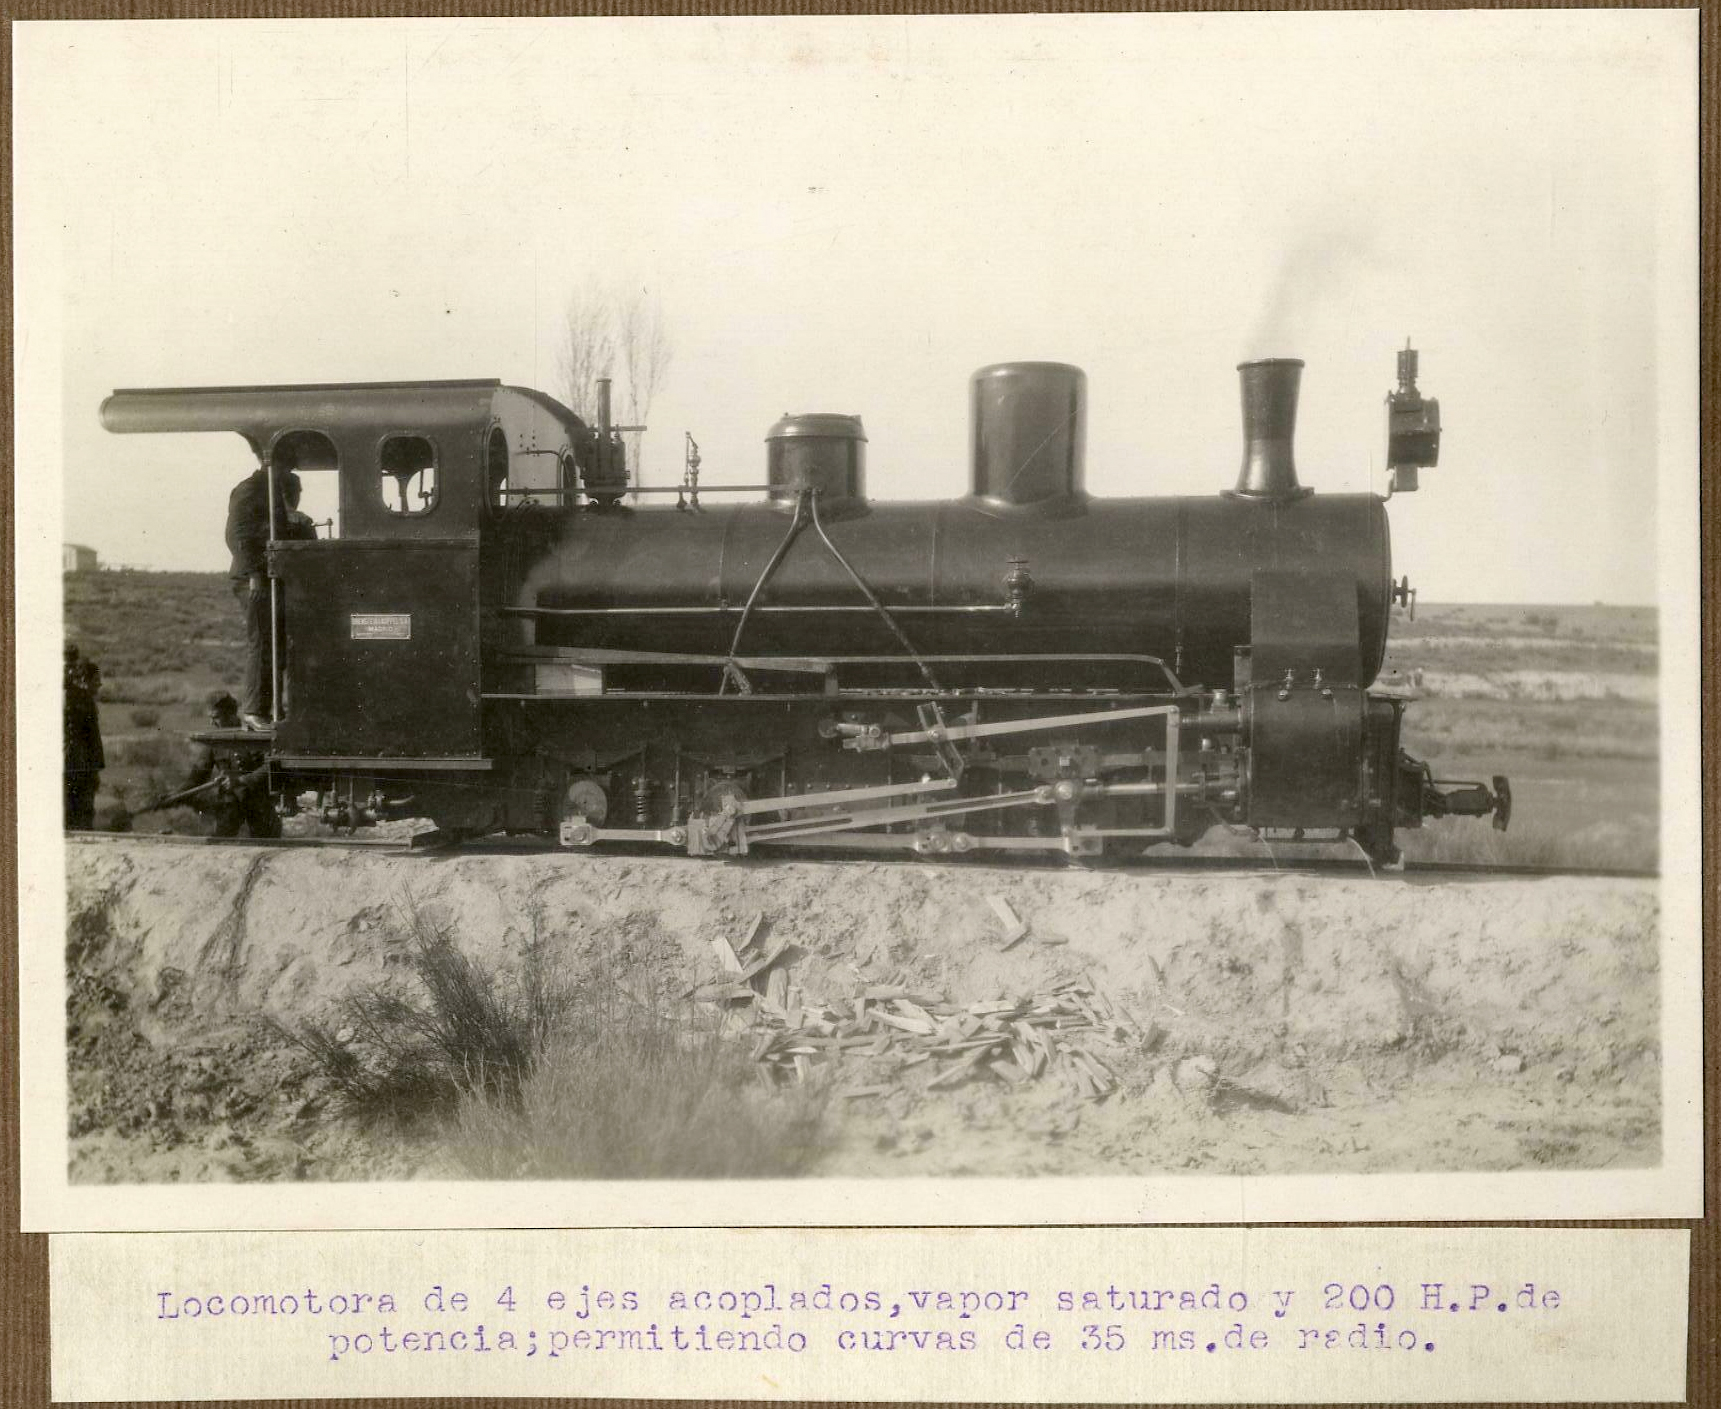 Locomotora de cuatro ejes acoplados, vapor saturado,  demostración experimental de los ingenieros del ejército, 1922-1923